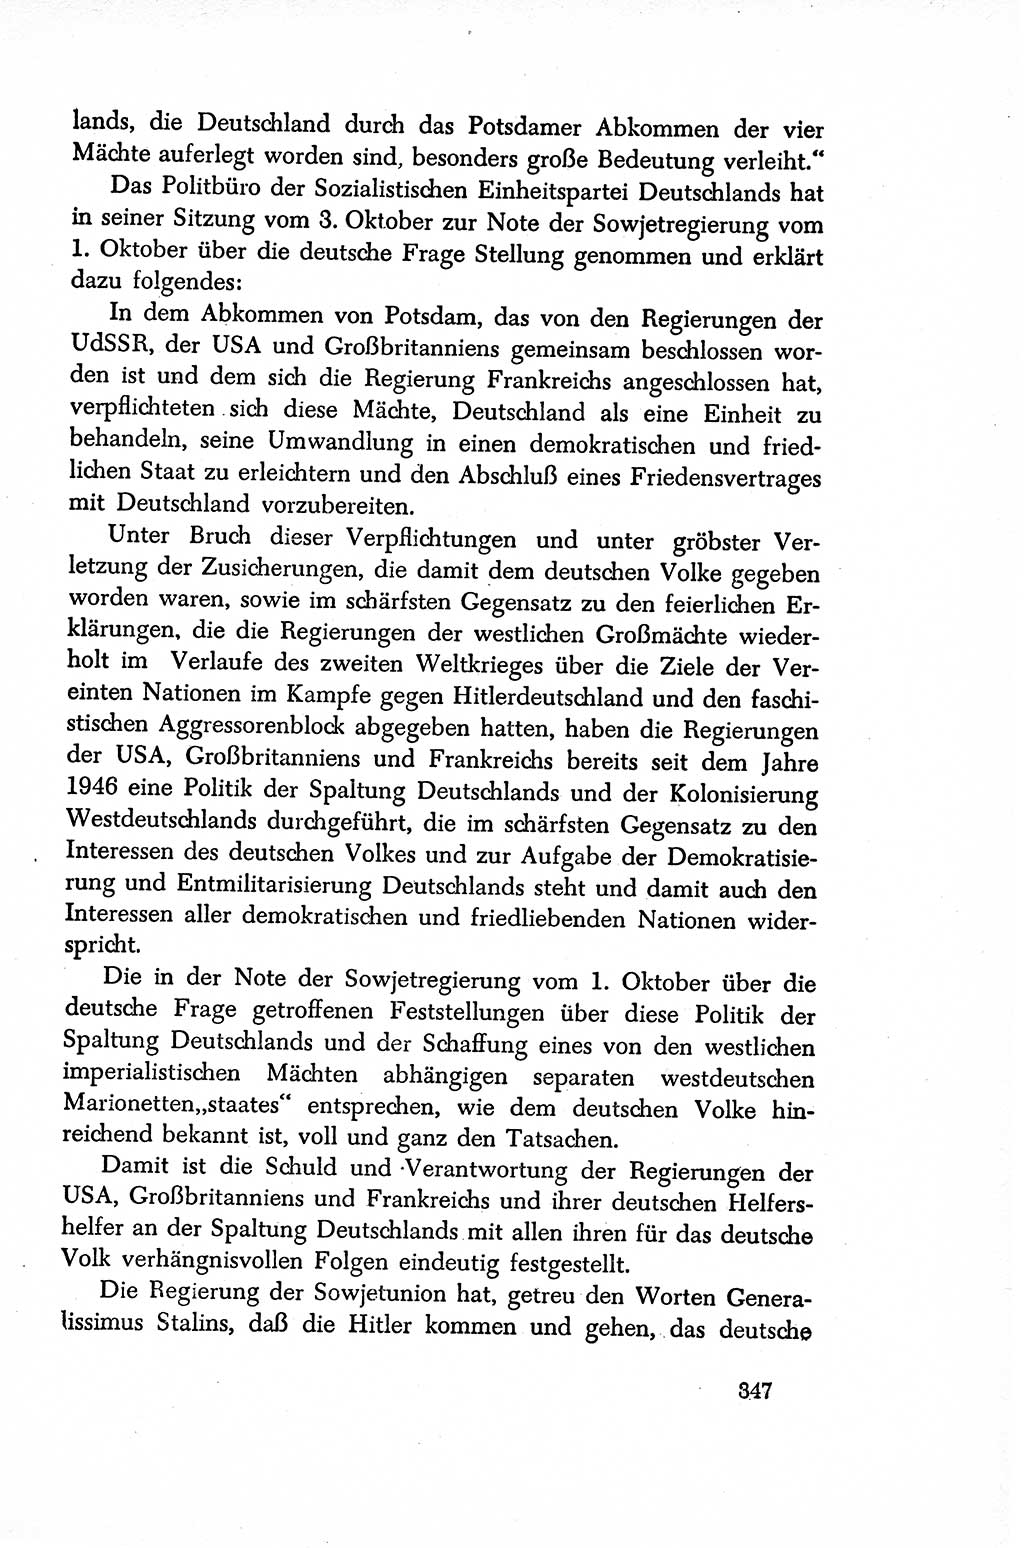 Dokumente der Sozialistischen Einheitspartei Deutschlands (SED) [Sowjetische Besatzungszone (SBZ) Deutschlands/Deutsche Demokratische Republik (DDR)] 1948-1950, Seite 347 (Dok. SED SBZ Dtl. DDR 1948-1950, S. 347)